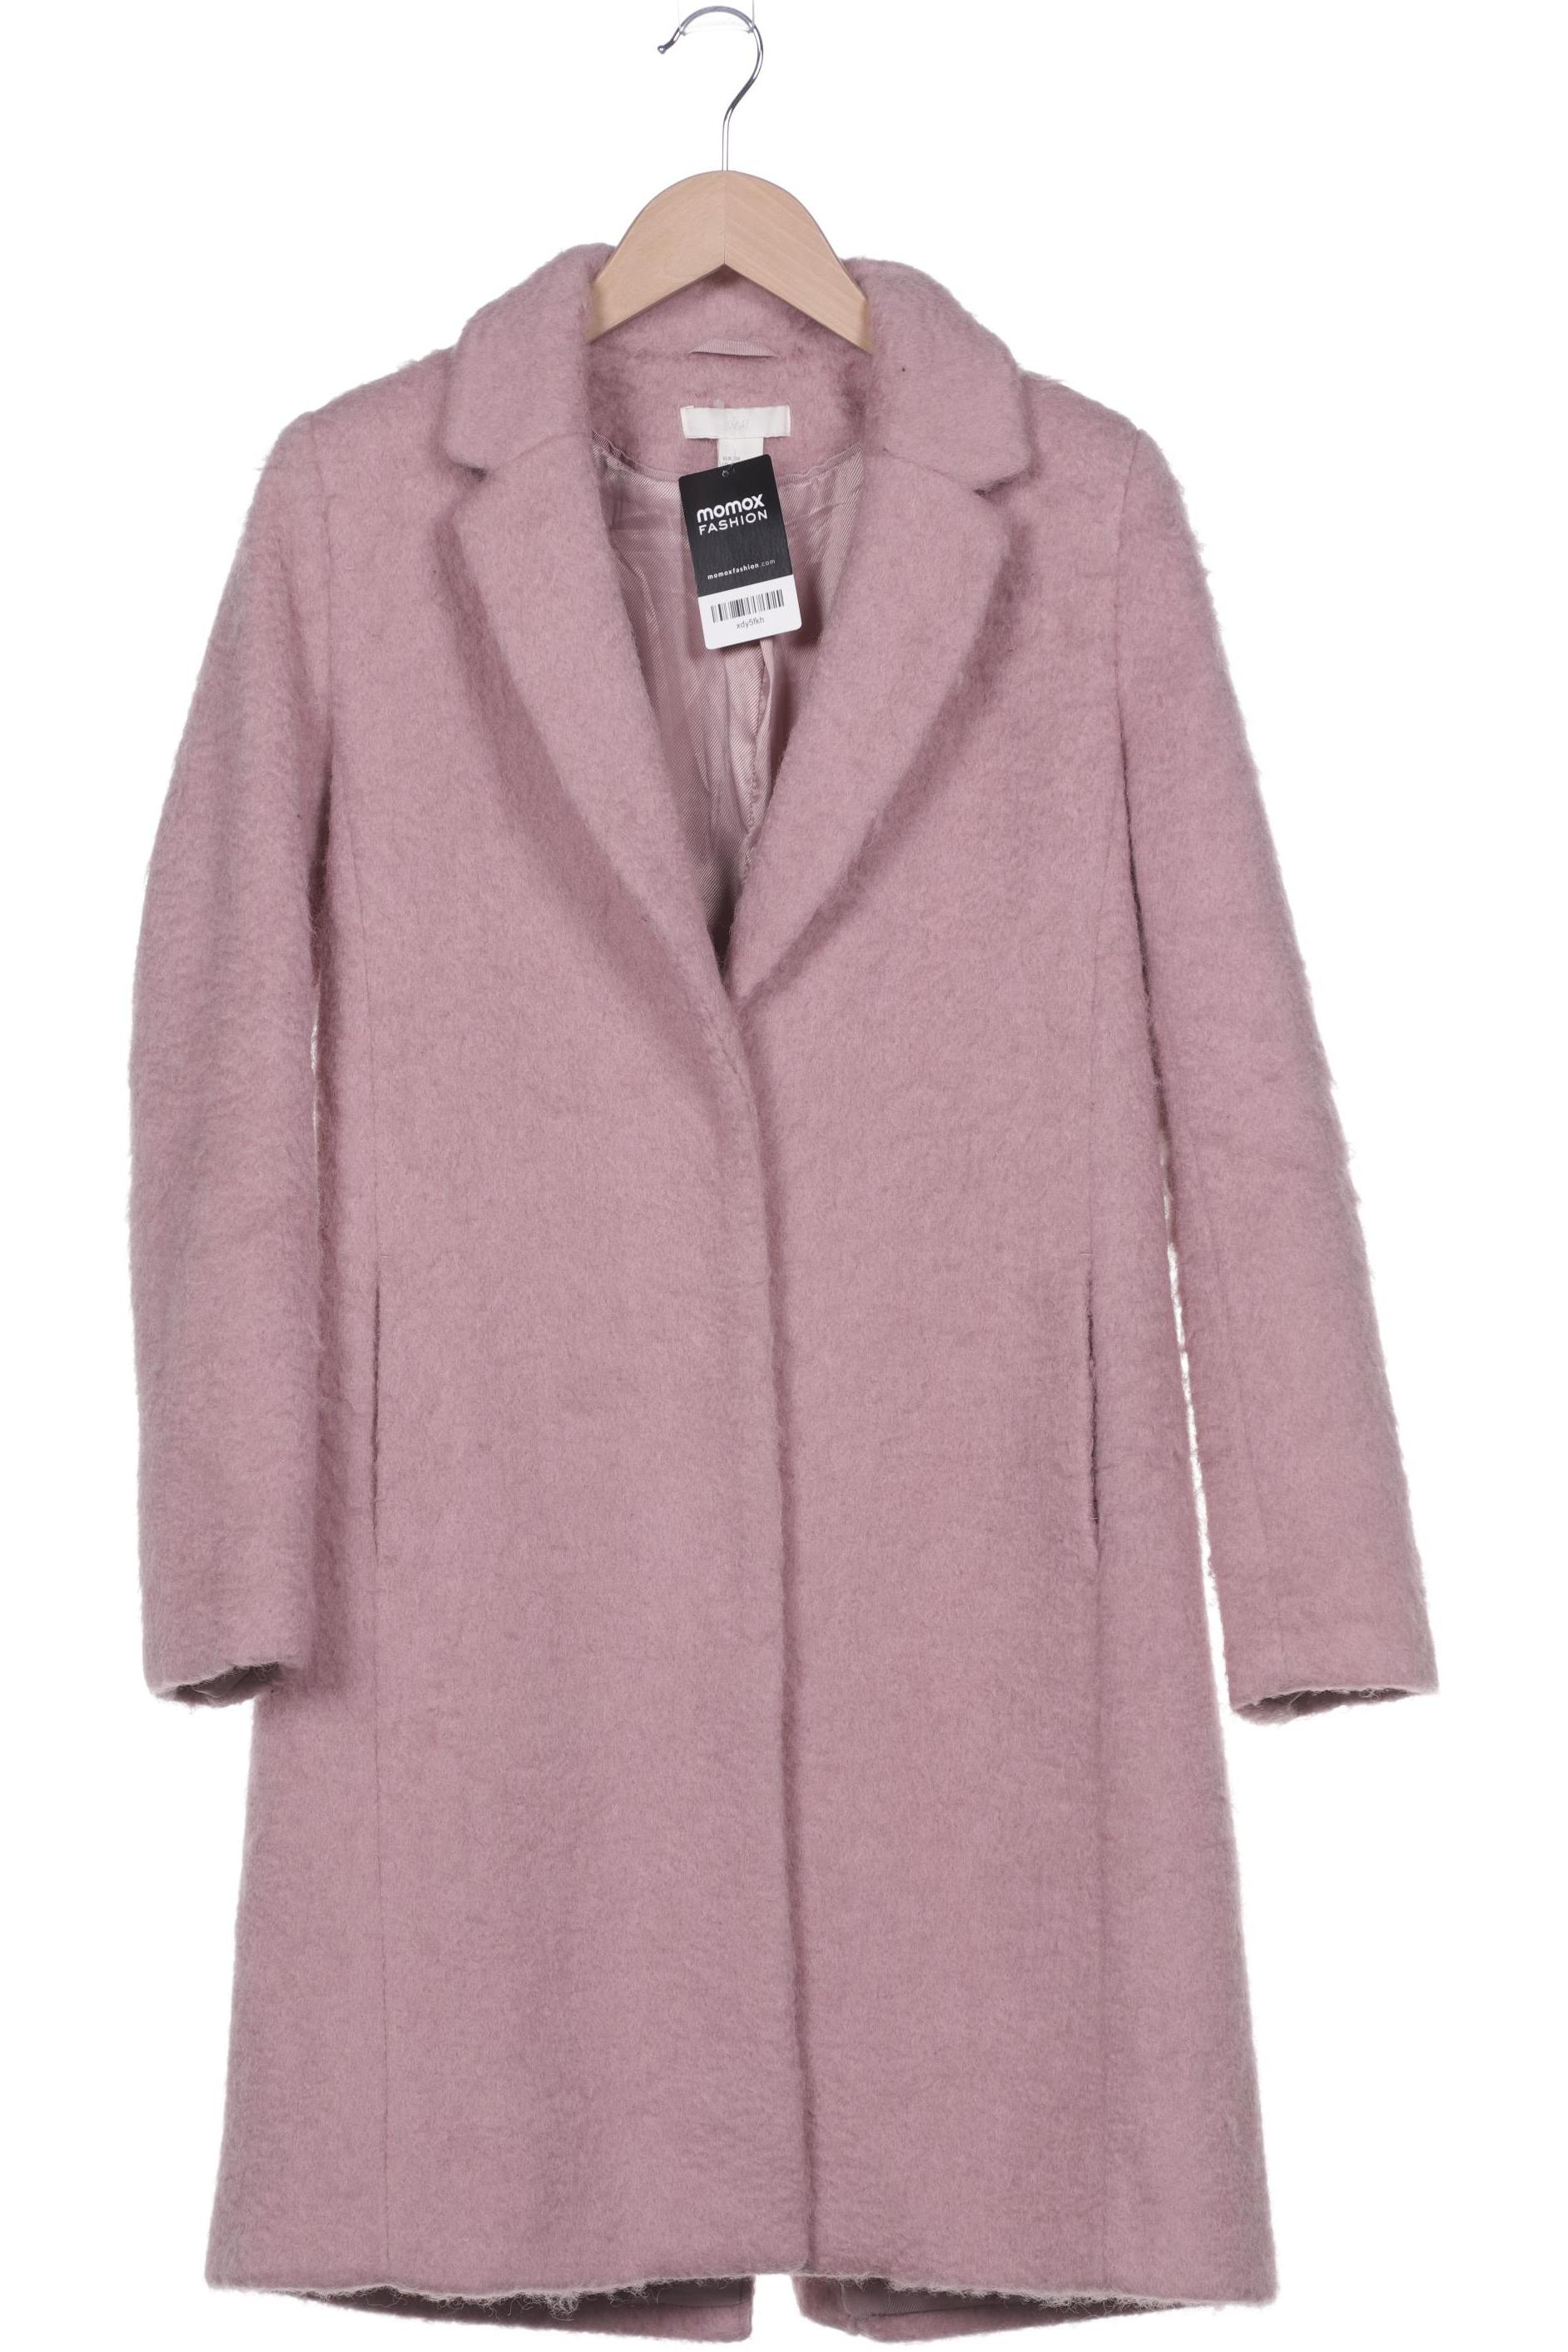 H&M Damen Mantel, pink, Gr. 38 von H&M